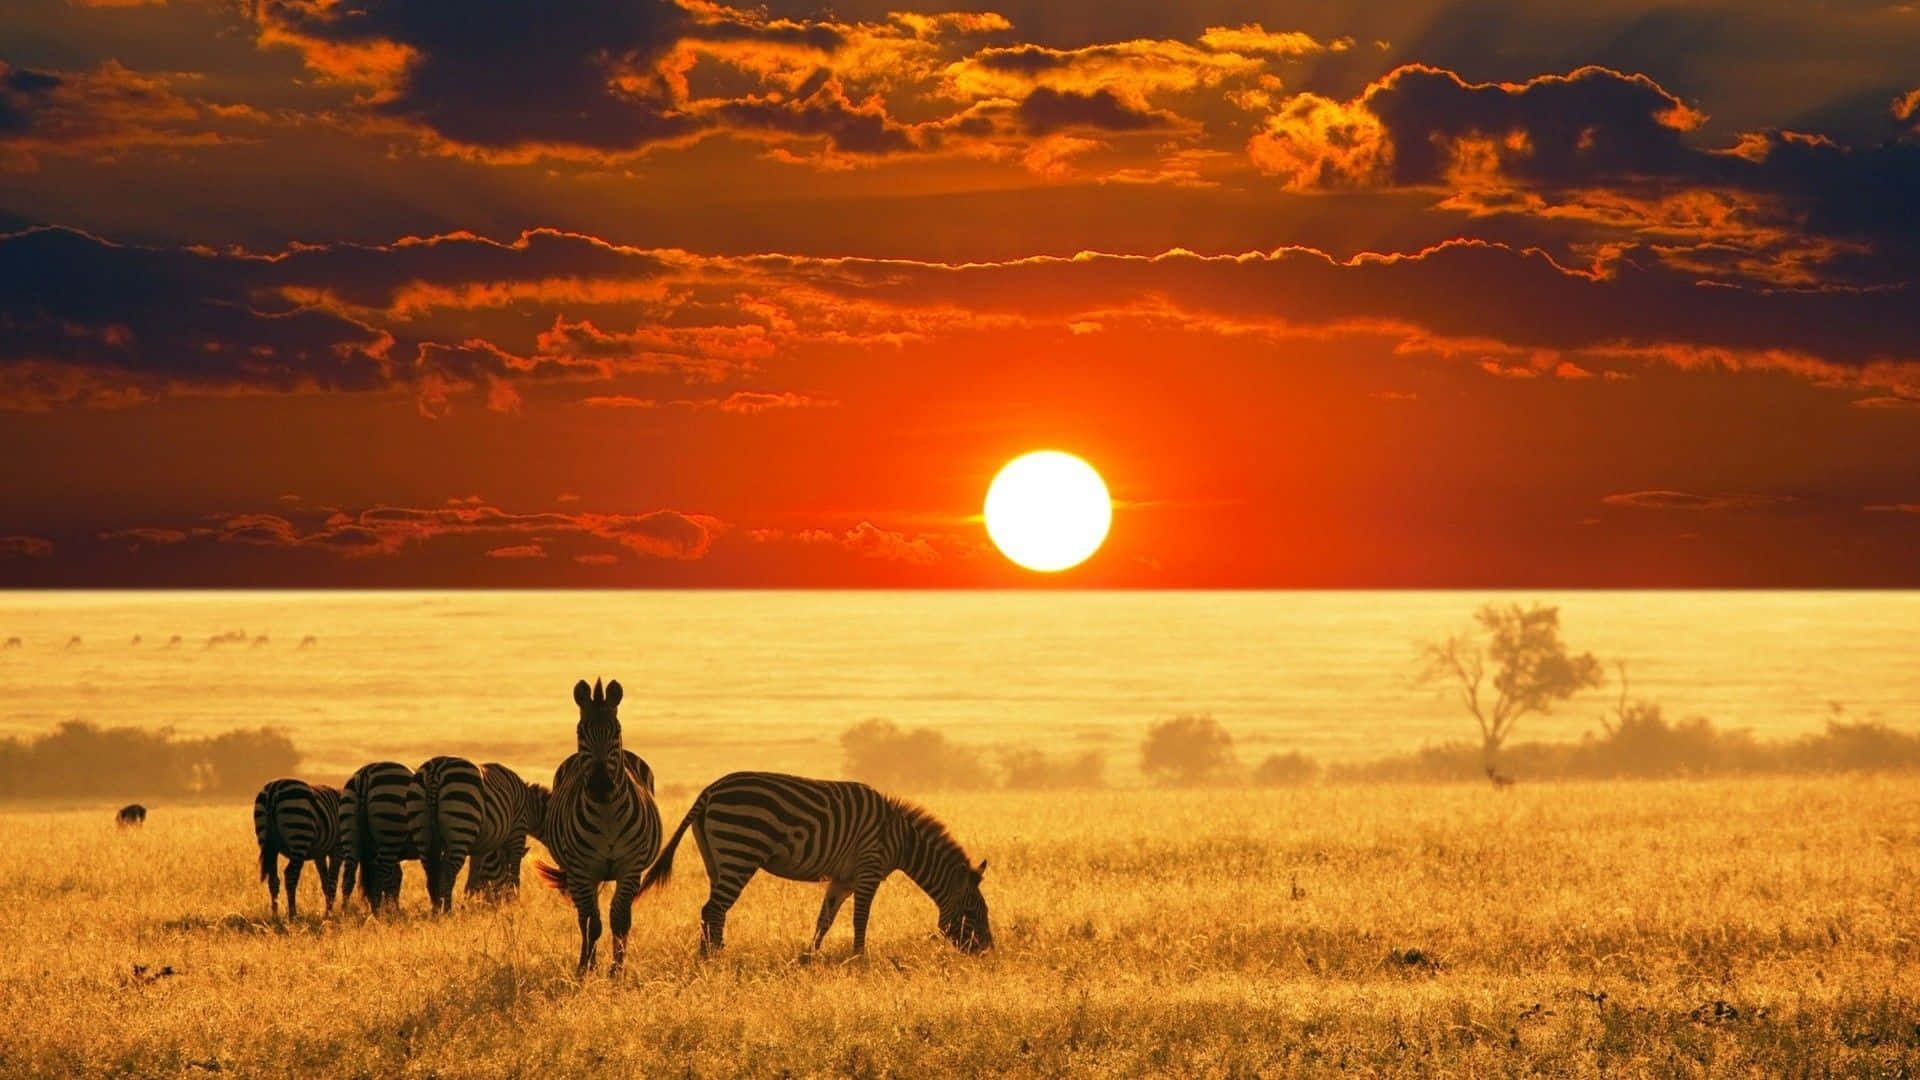 Zebras Against Sunset On Safari Background